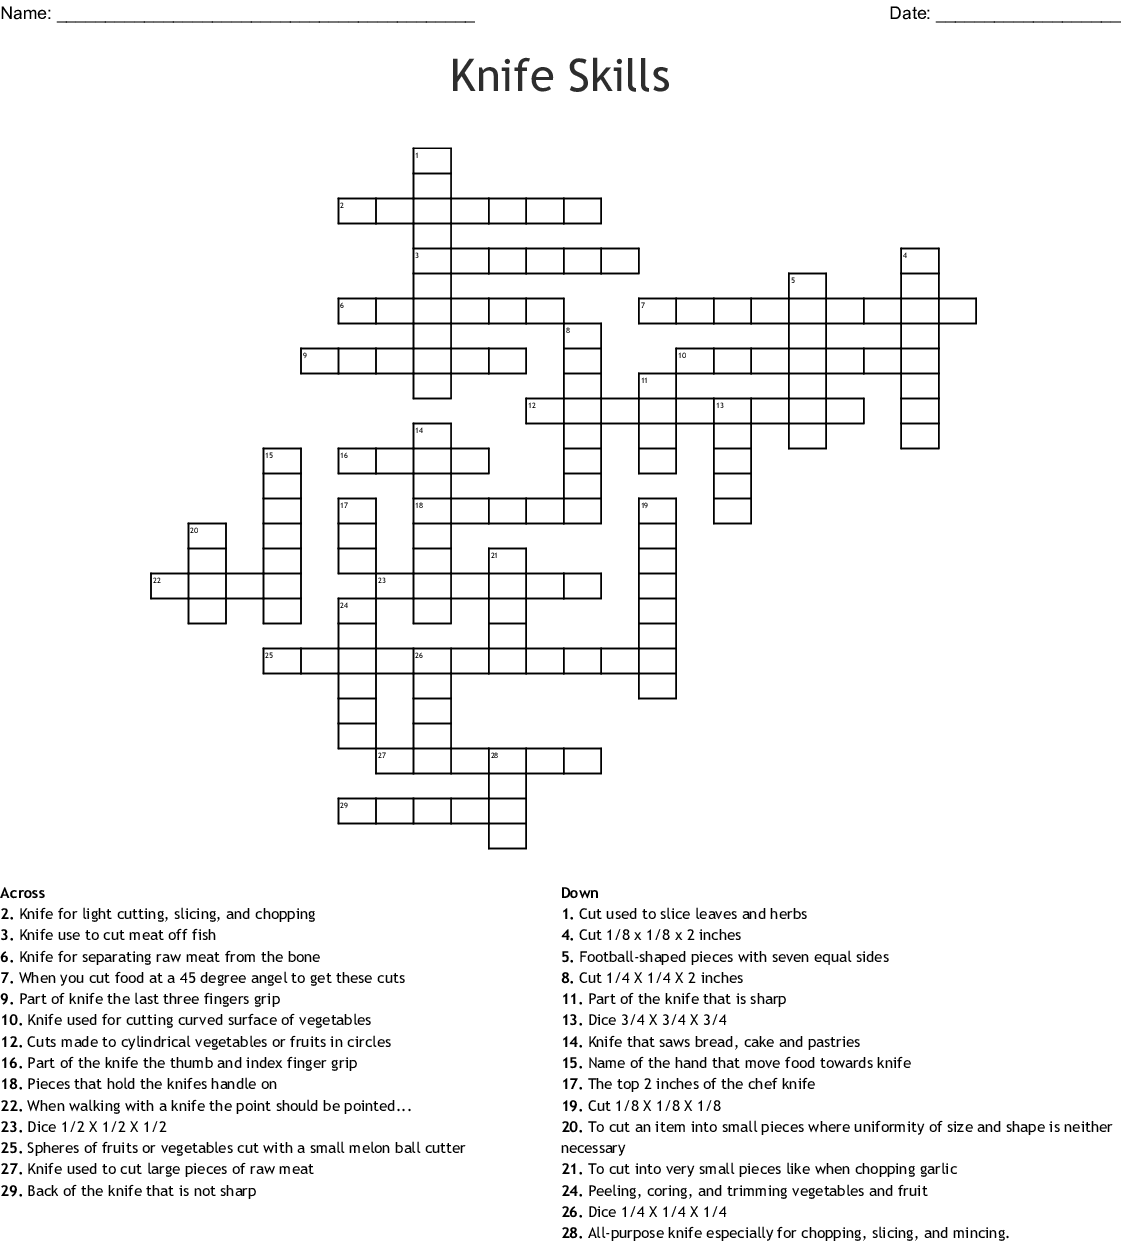 knife-skills-worksheet-answers-skillsworksheets